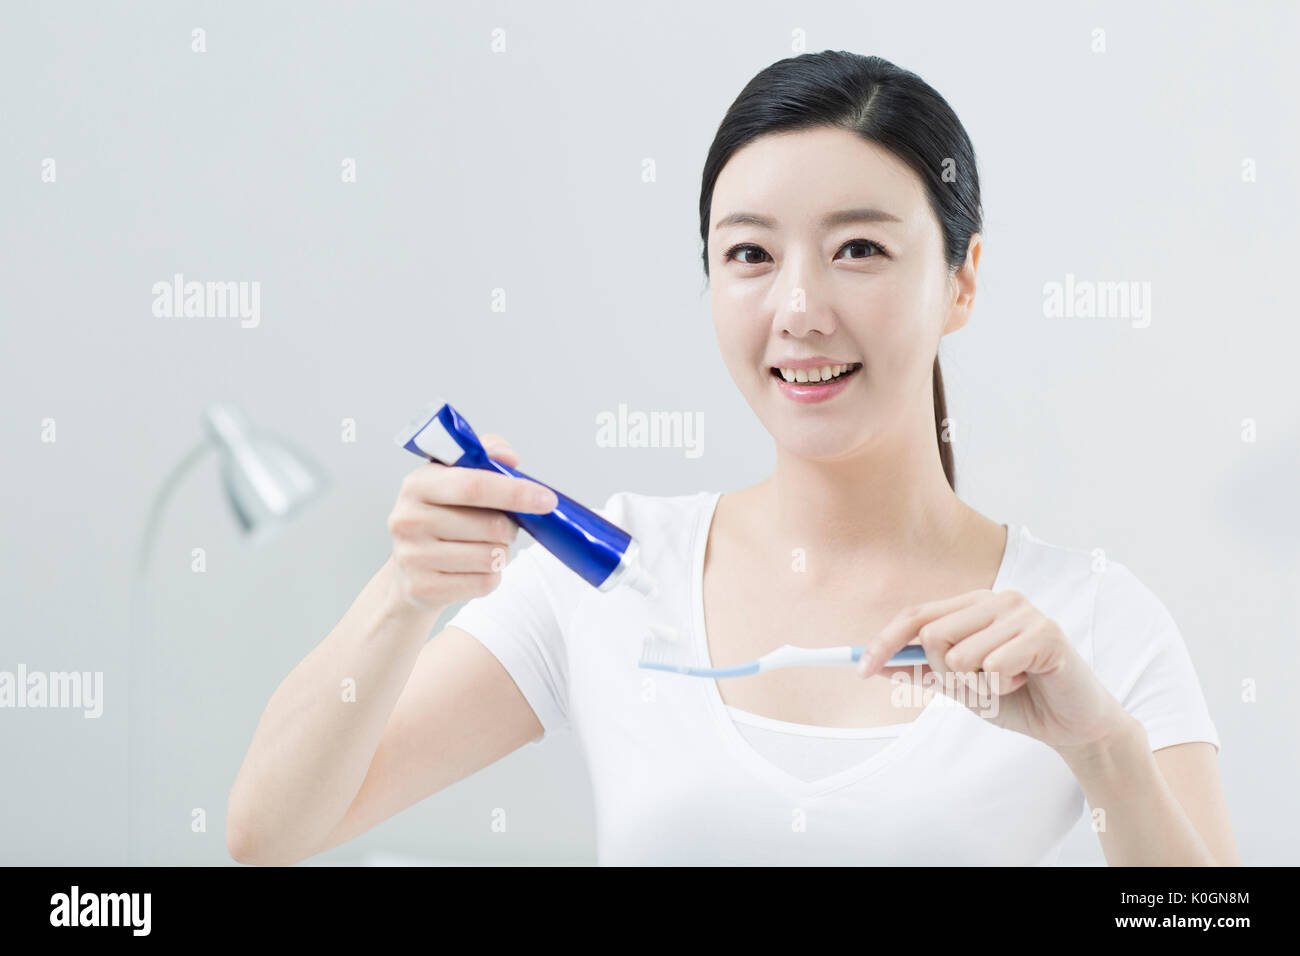 Portrait de femme souriante avec une brosse à dents et dentifrice Banque D'Images